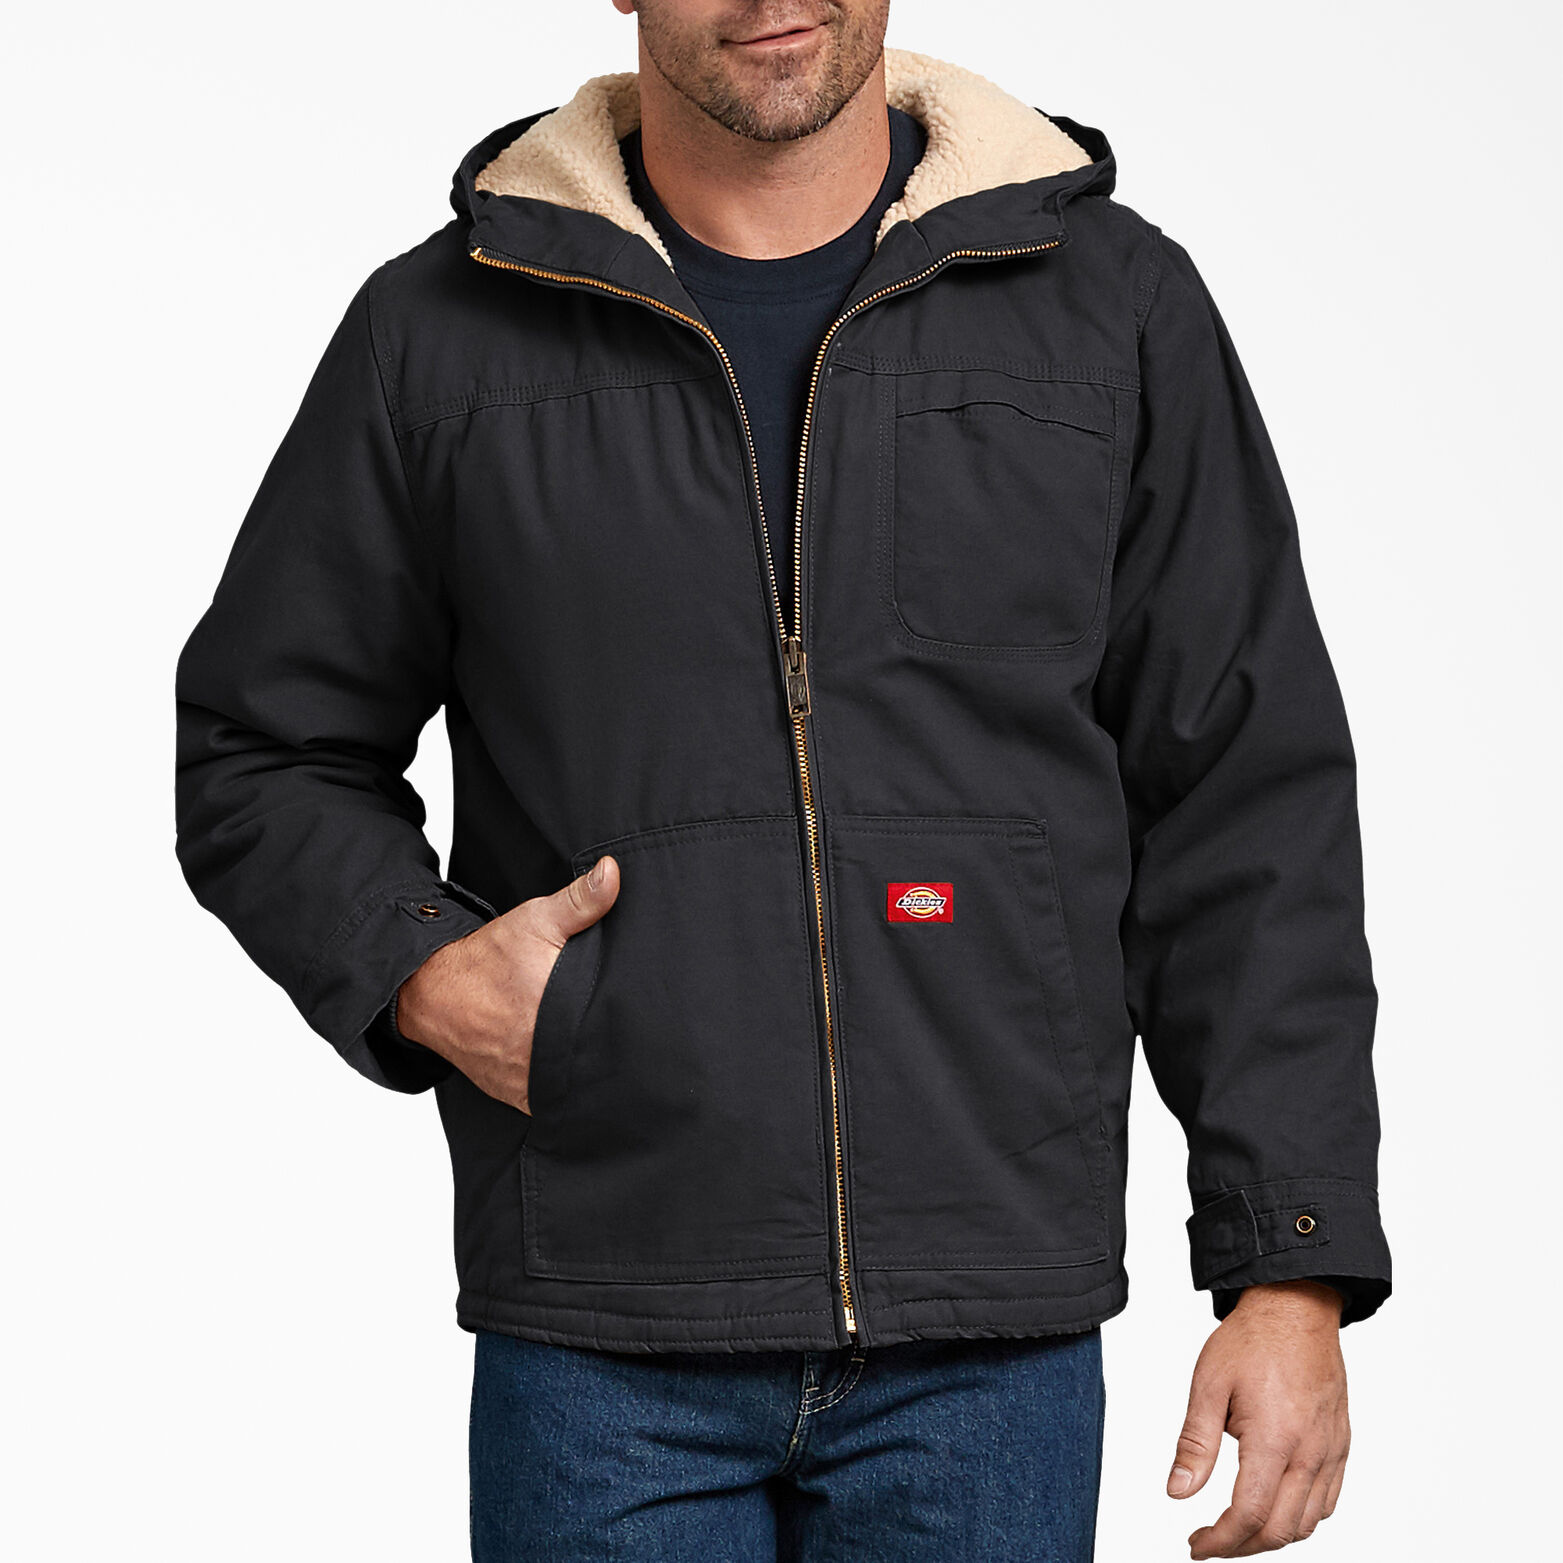 Duck Sherpa Lined Hooded Jacket for Men Rinsed Black | Dickies